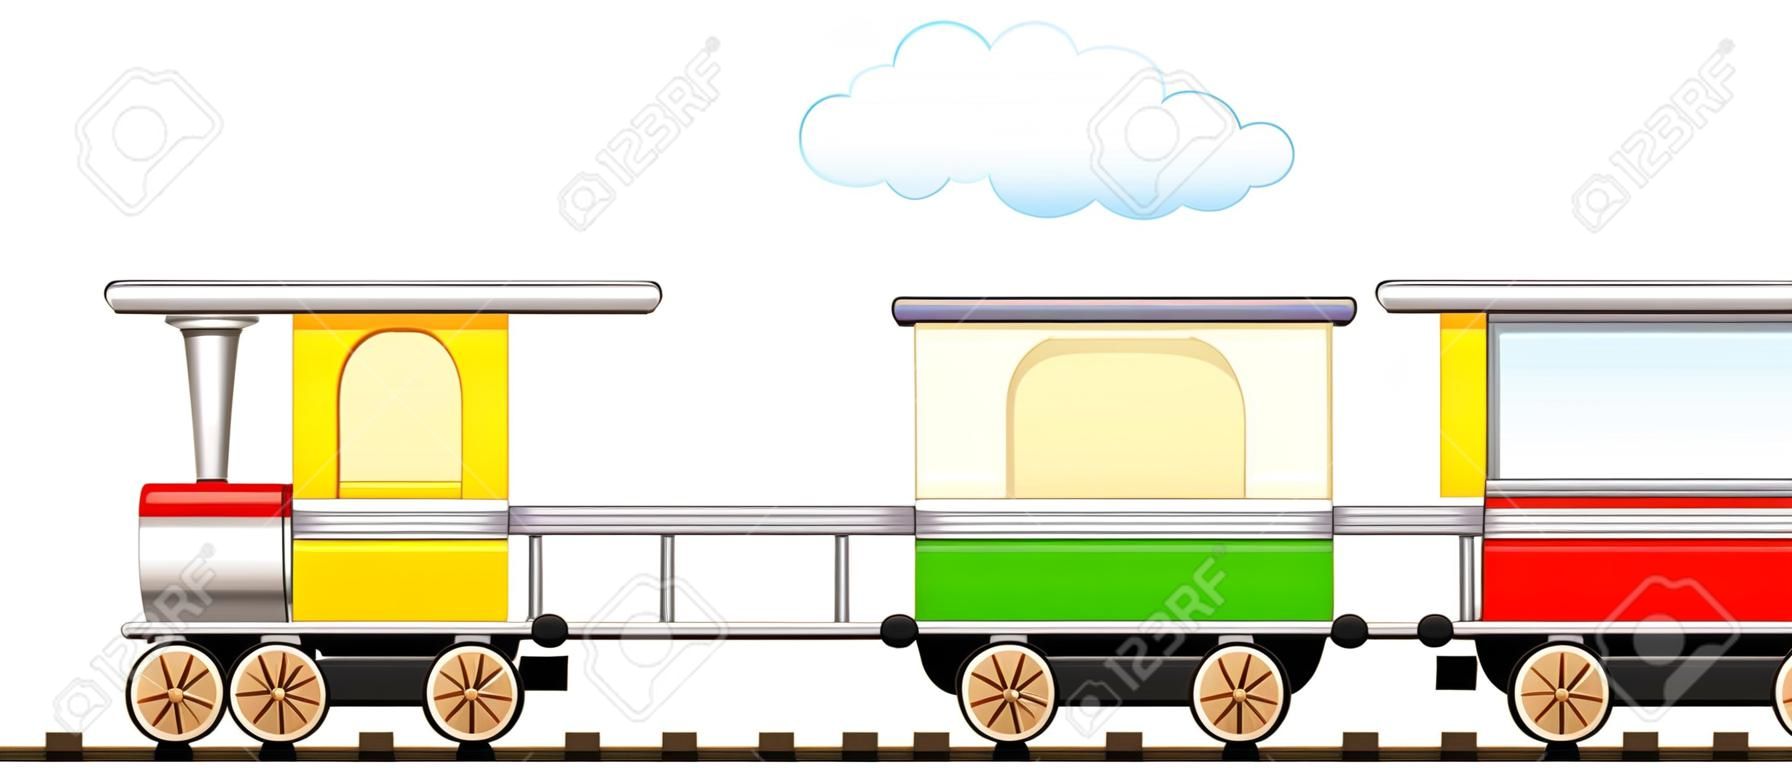 卡通孤立可爱列车与五颜六色的车厢在铁路